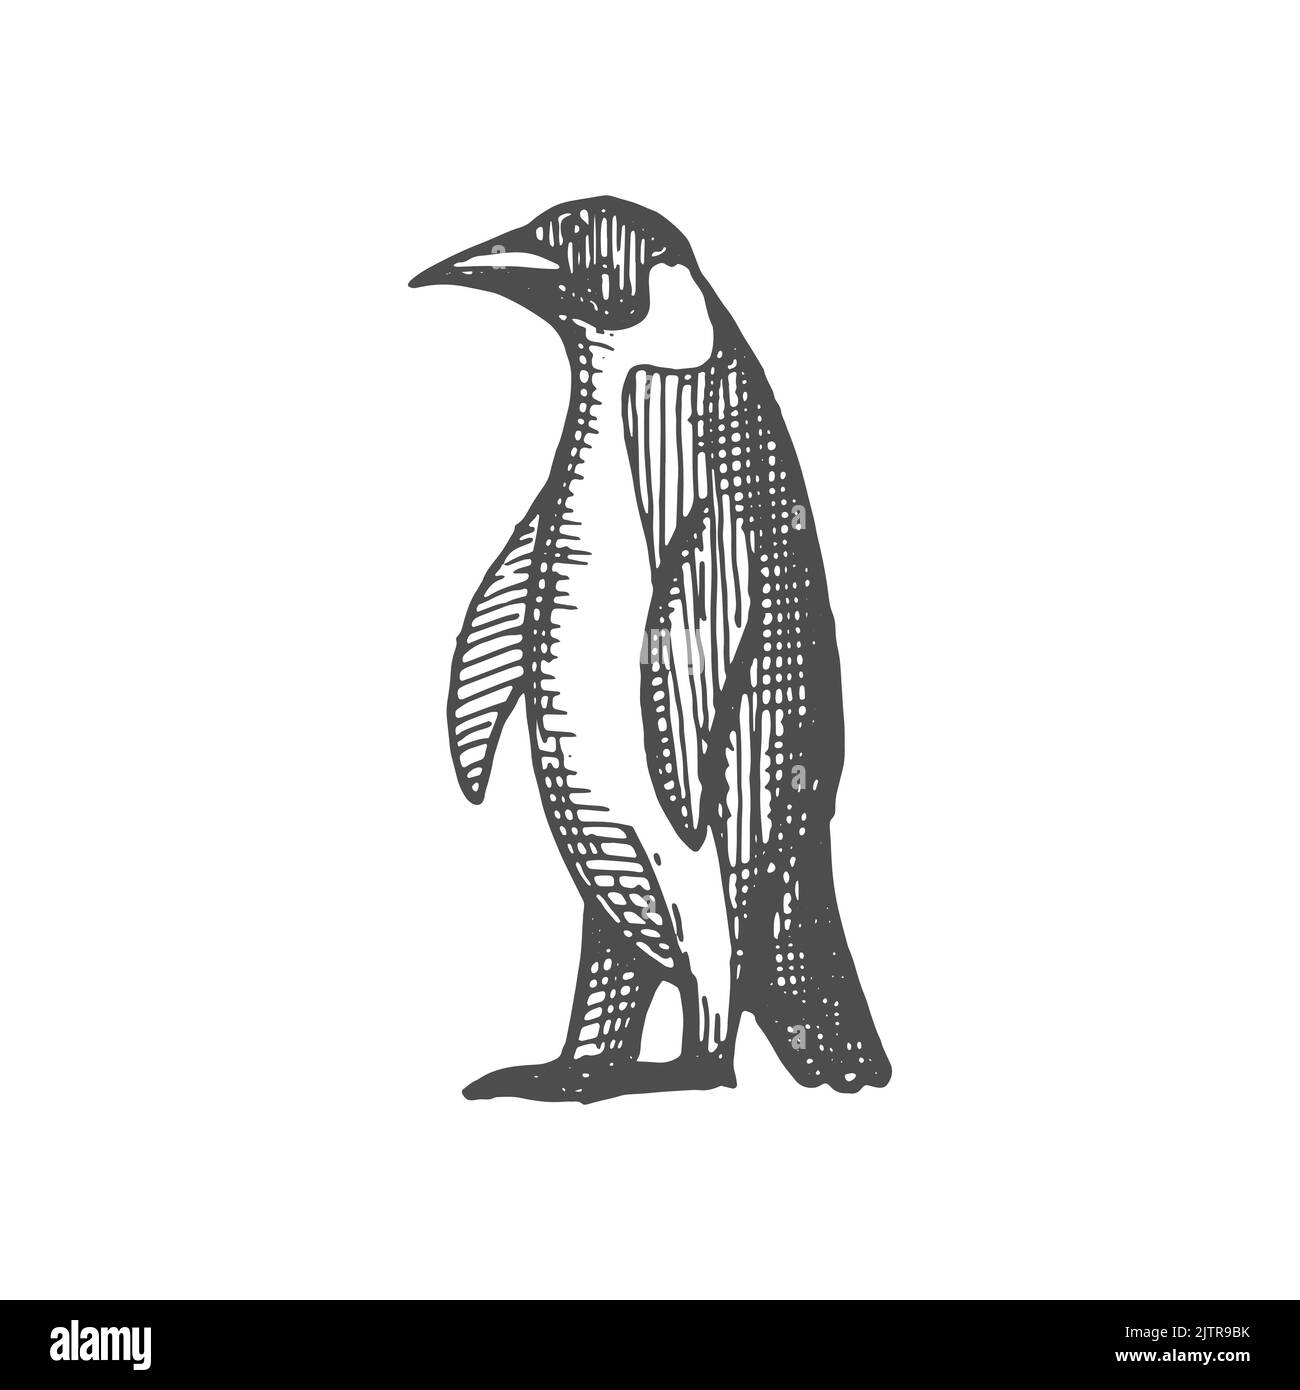 Emperador pingüino aislado icono de croquis monocromo. Vector Aves marinas no voladoras grandes del hemisferio sur, con aletas para nadar bajo el agua. Animal rey pingüino, criatura gentoo del atlántico Ilustración del Vector